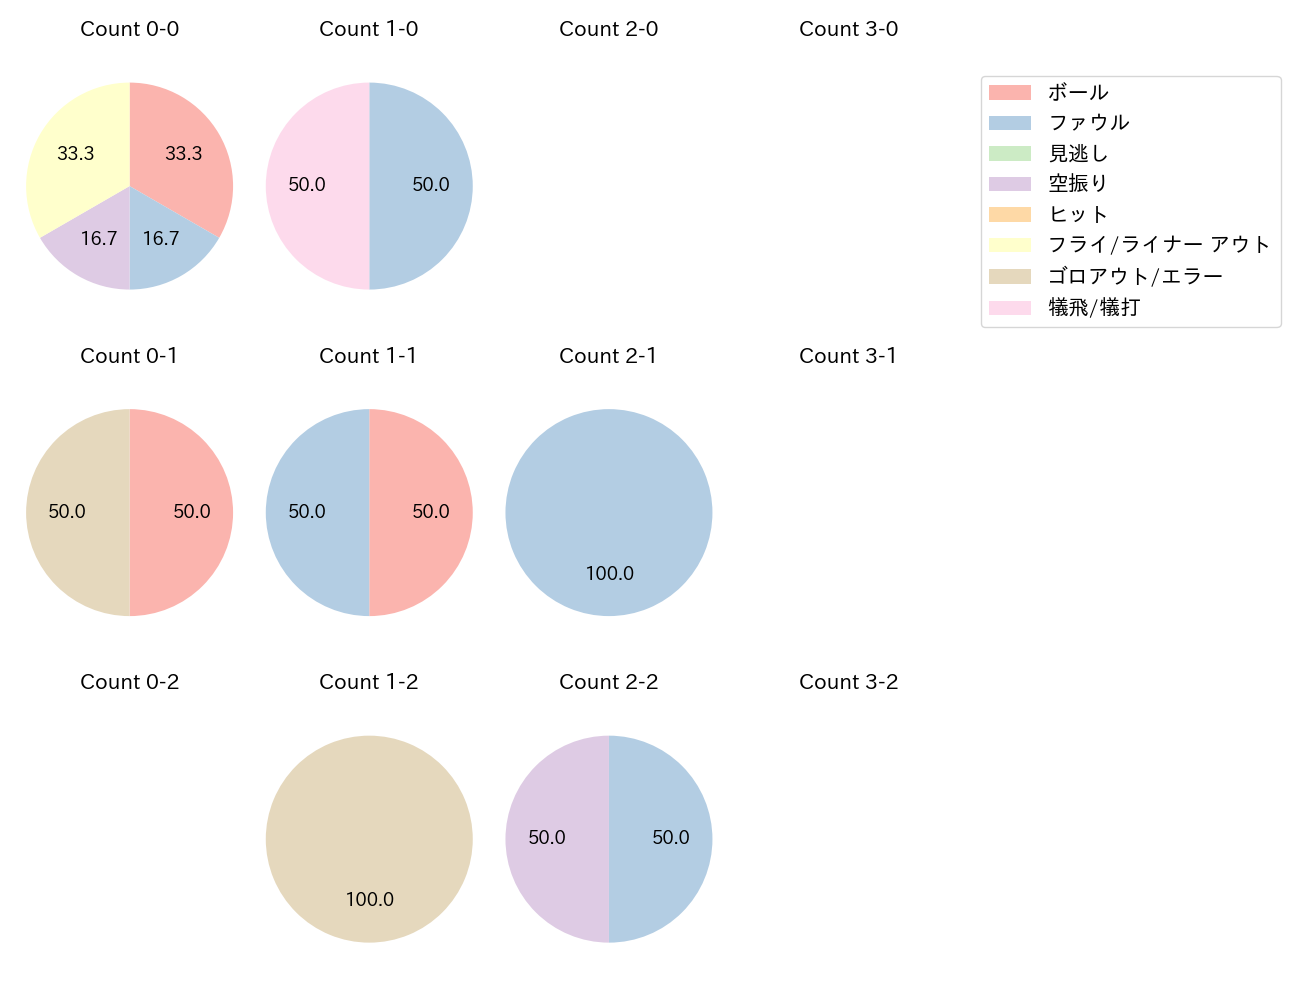 渡邉 大樹の球数分布(2022年5月)